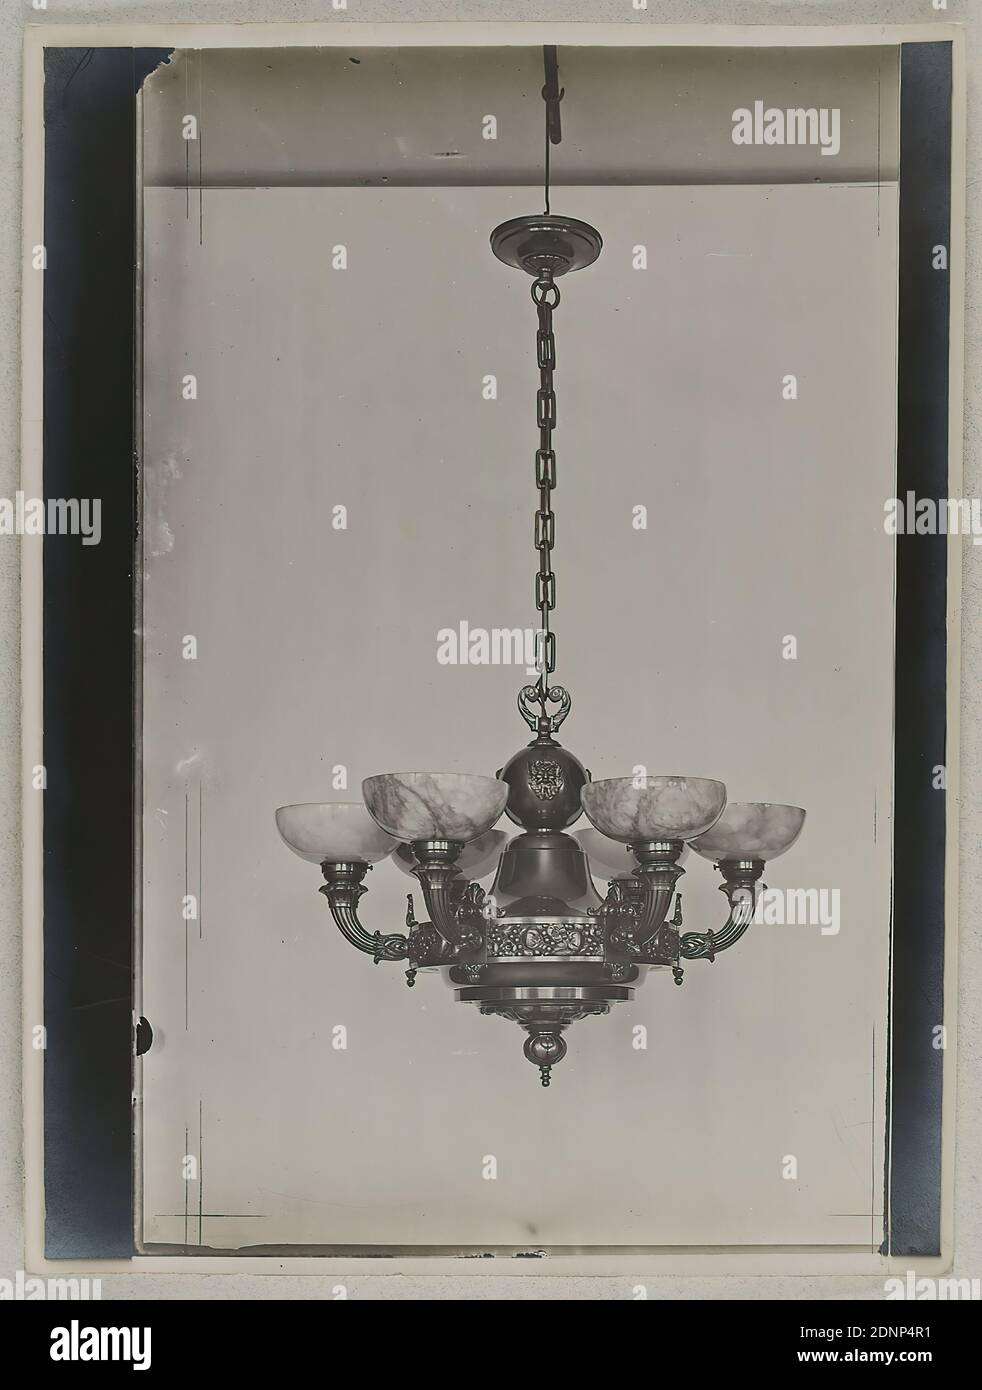 Hamann, lampada da soffitto, carta in gelatina d'argento, processo positivo in bianco e nero, totale: Altezza: 24,10 cm; larghezza: 18,00 cm, fotografia, illuminazione, lampade, vita Foto Stock